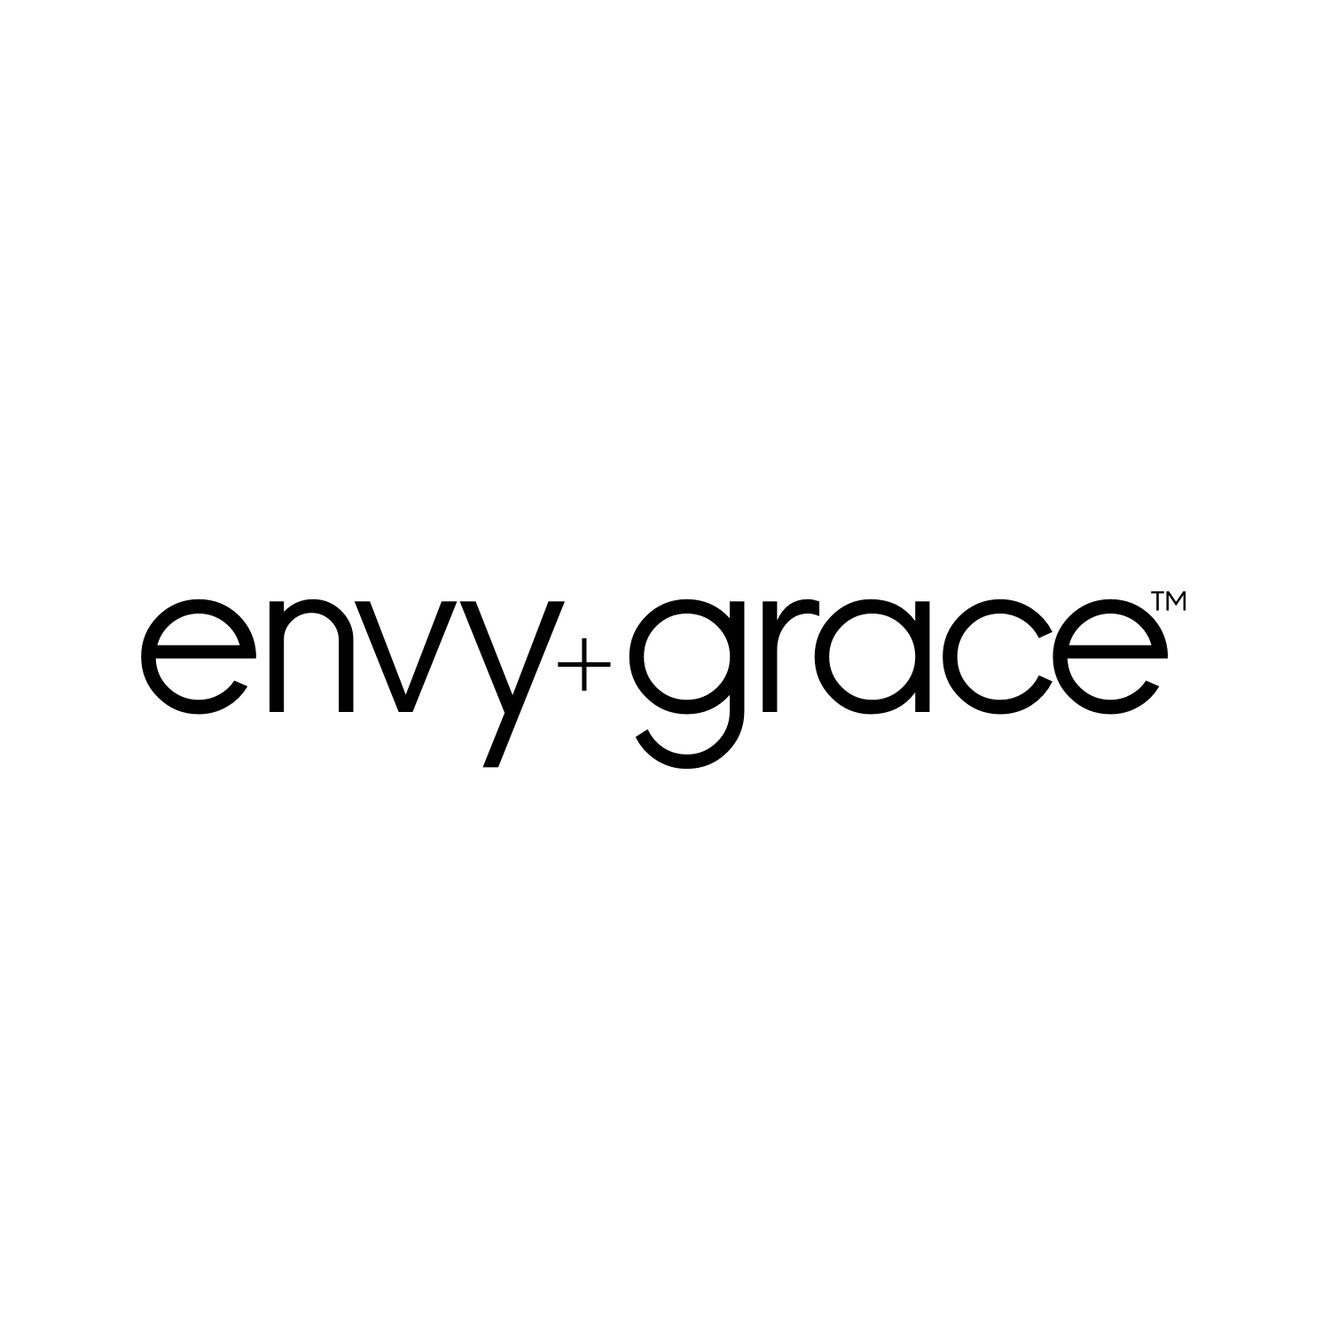 envy + grace logo